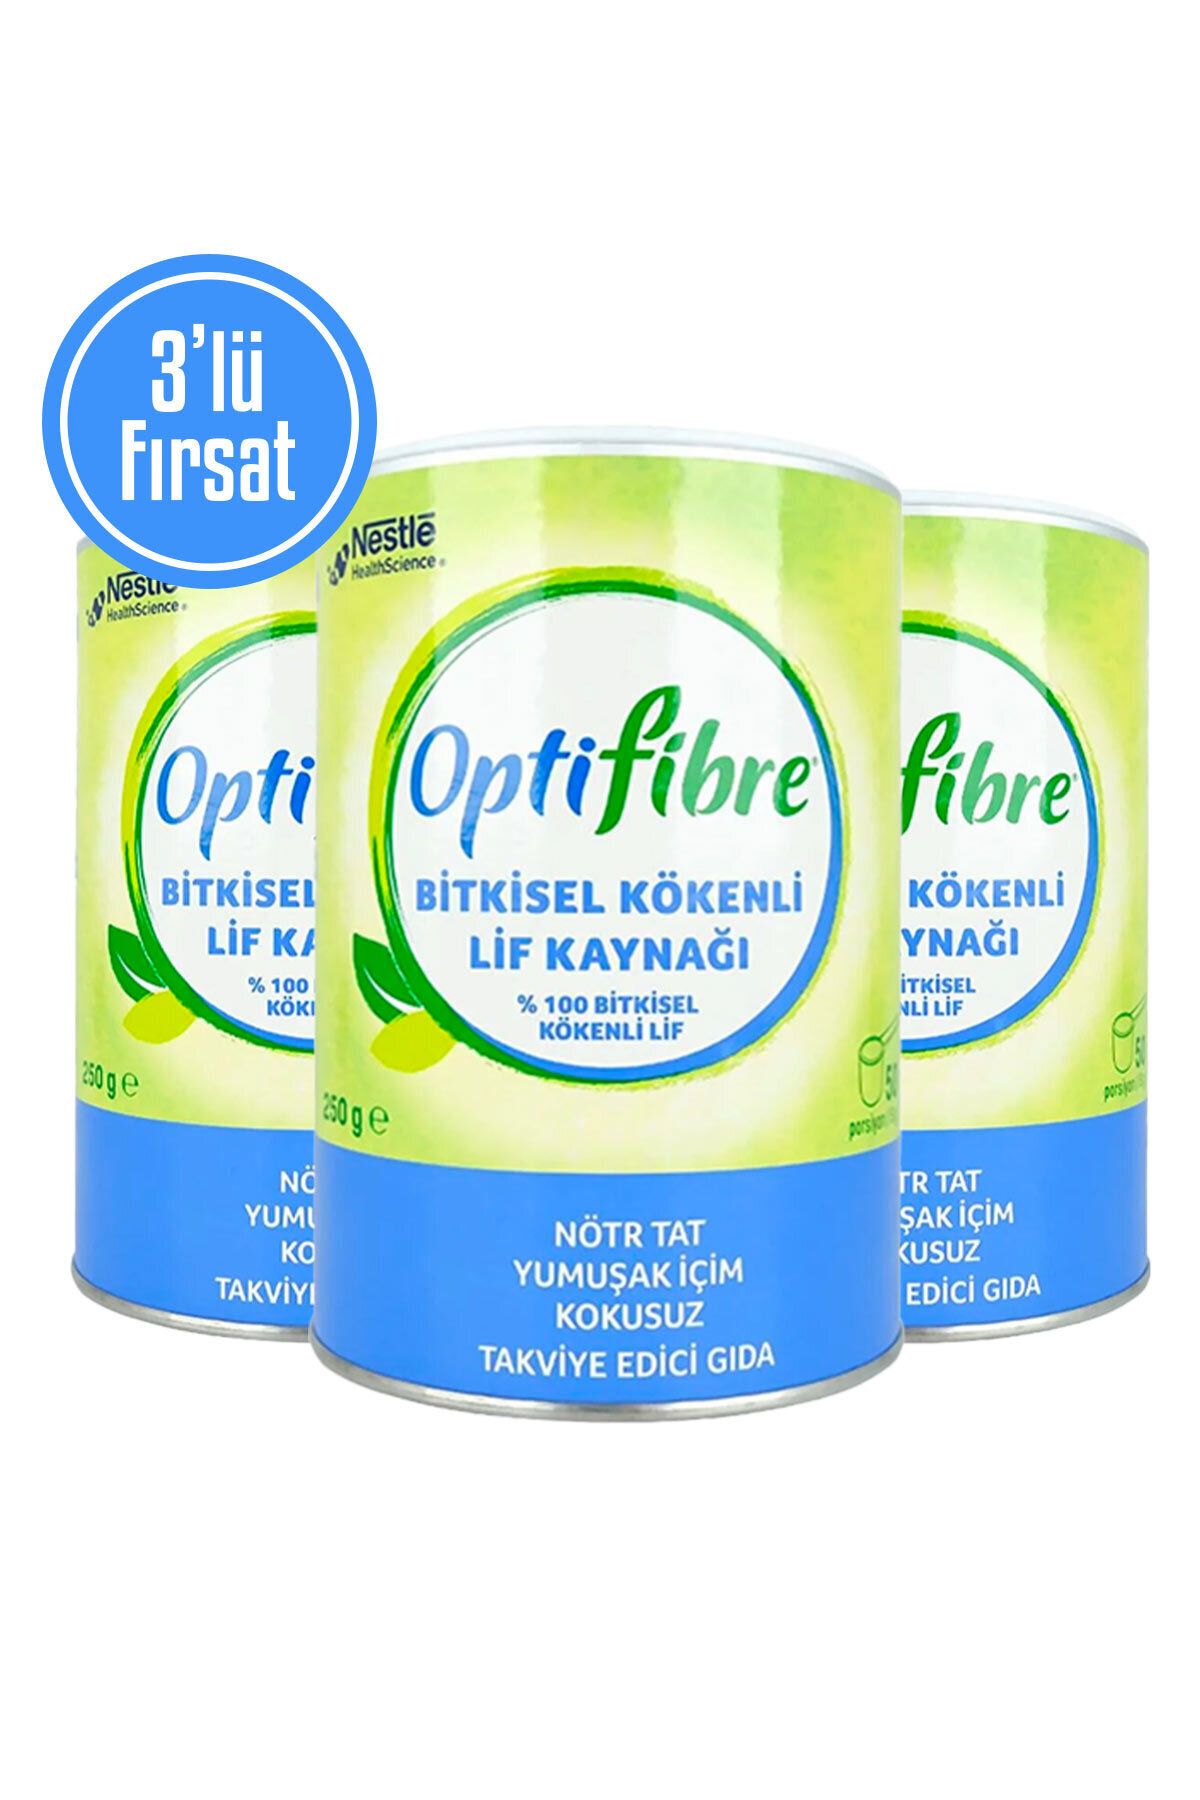 OptiFibre 3'lü Fırsat Bitkisel Kökenli Lif Kaynağı Takviye Edici Gıda 250 g